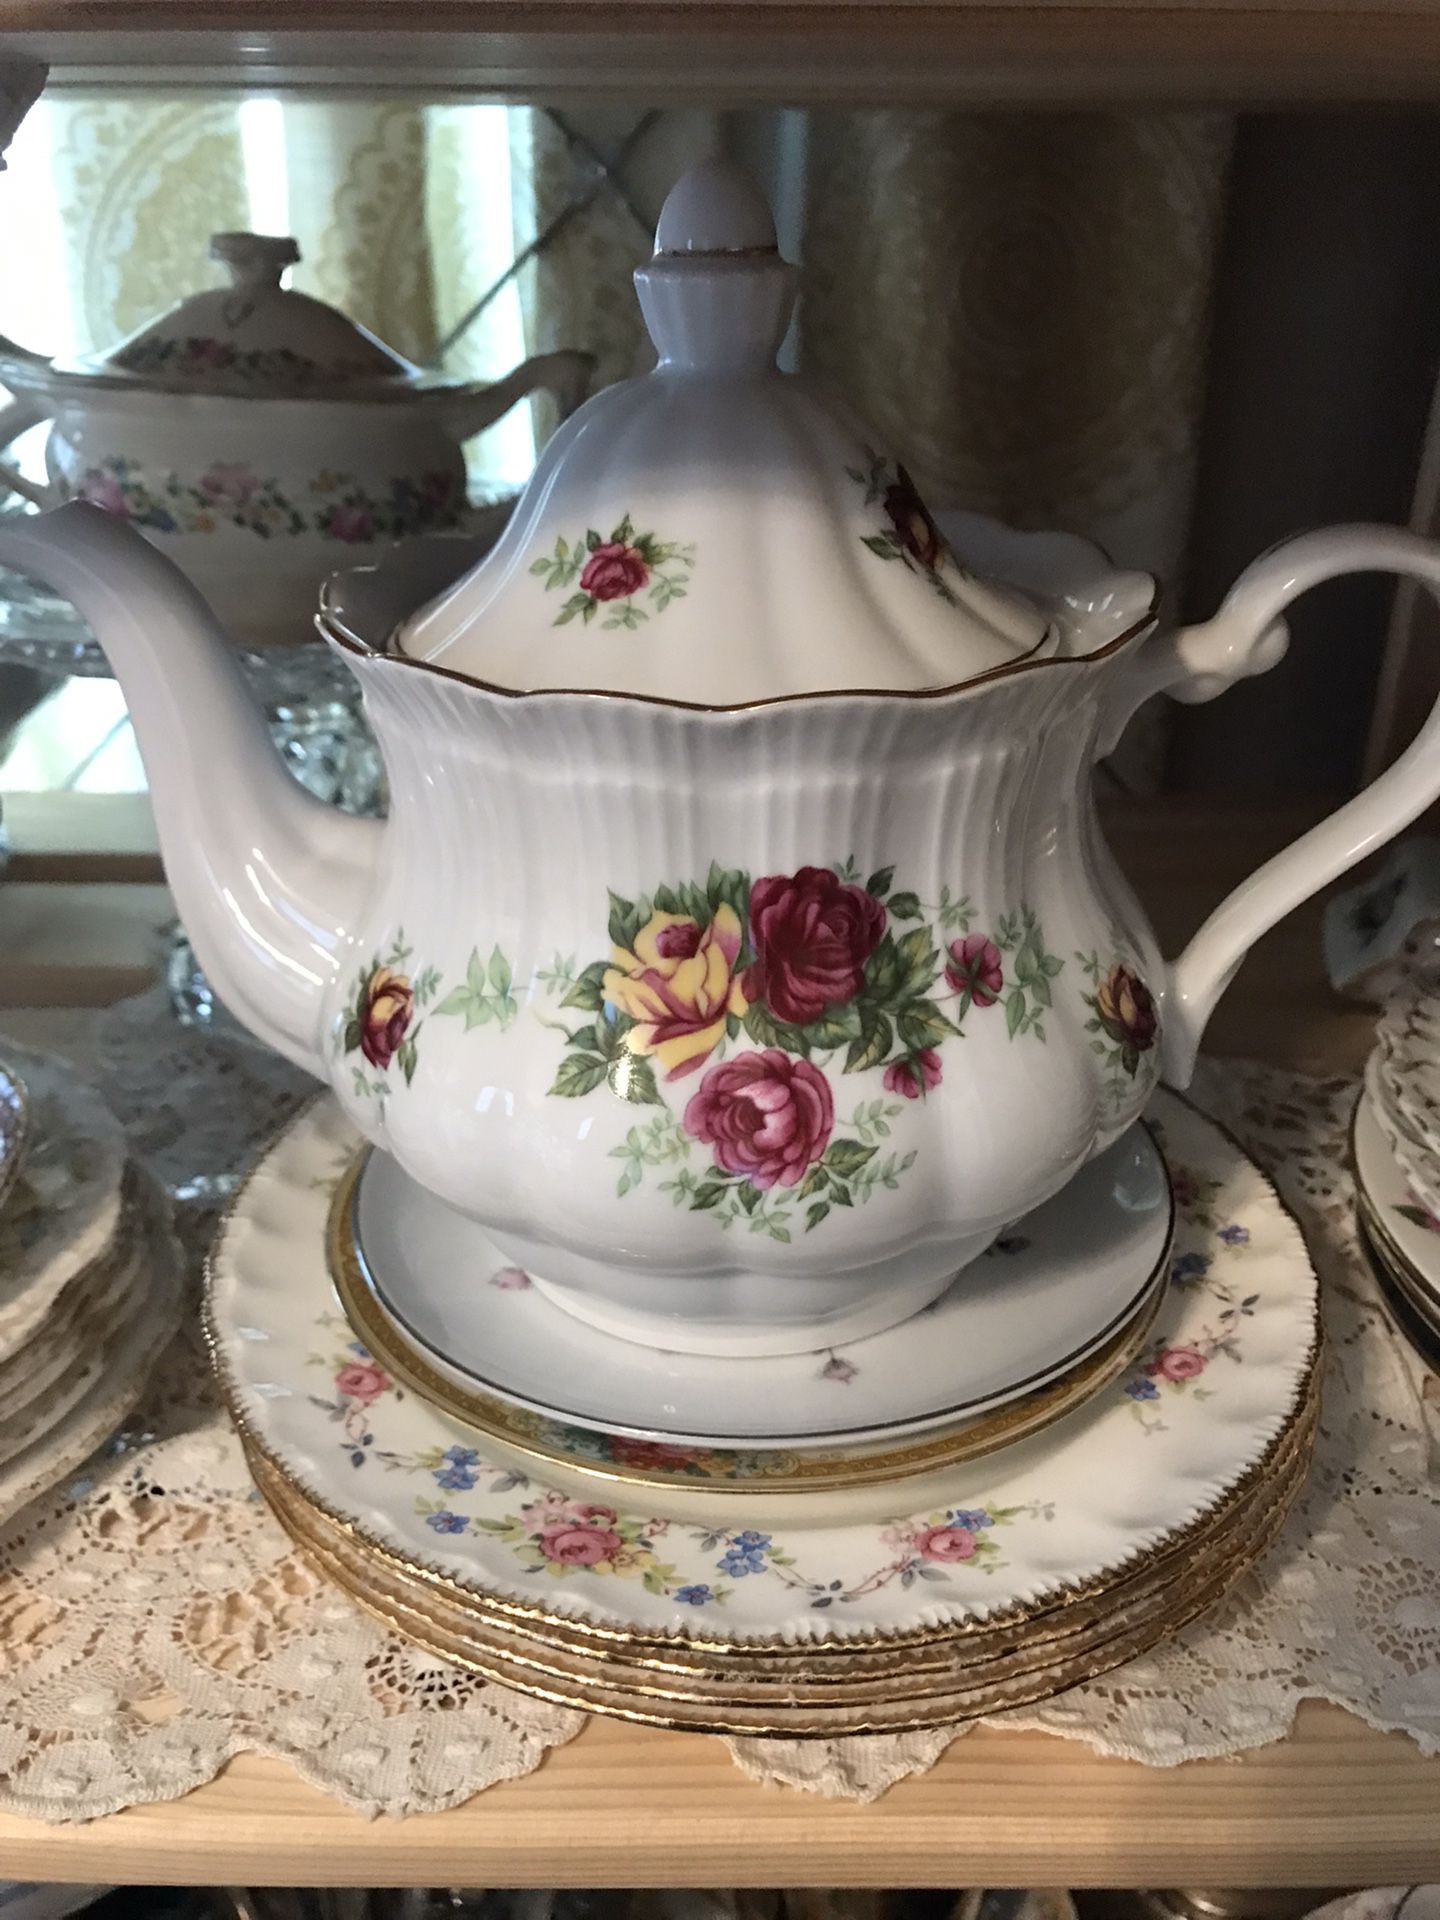 Vintage Teacups & Teapots ..Tea Parties🌸🍃